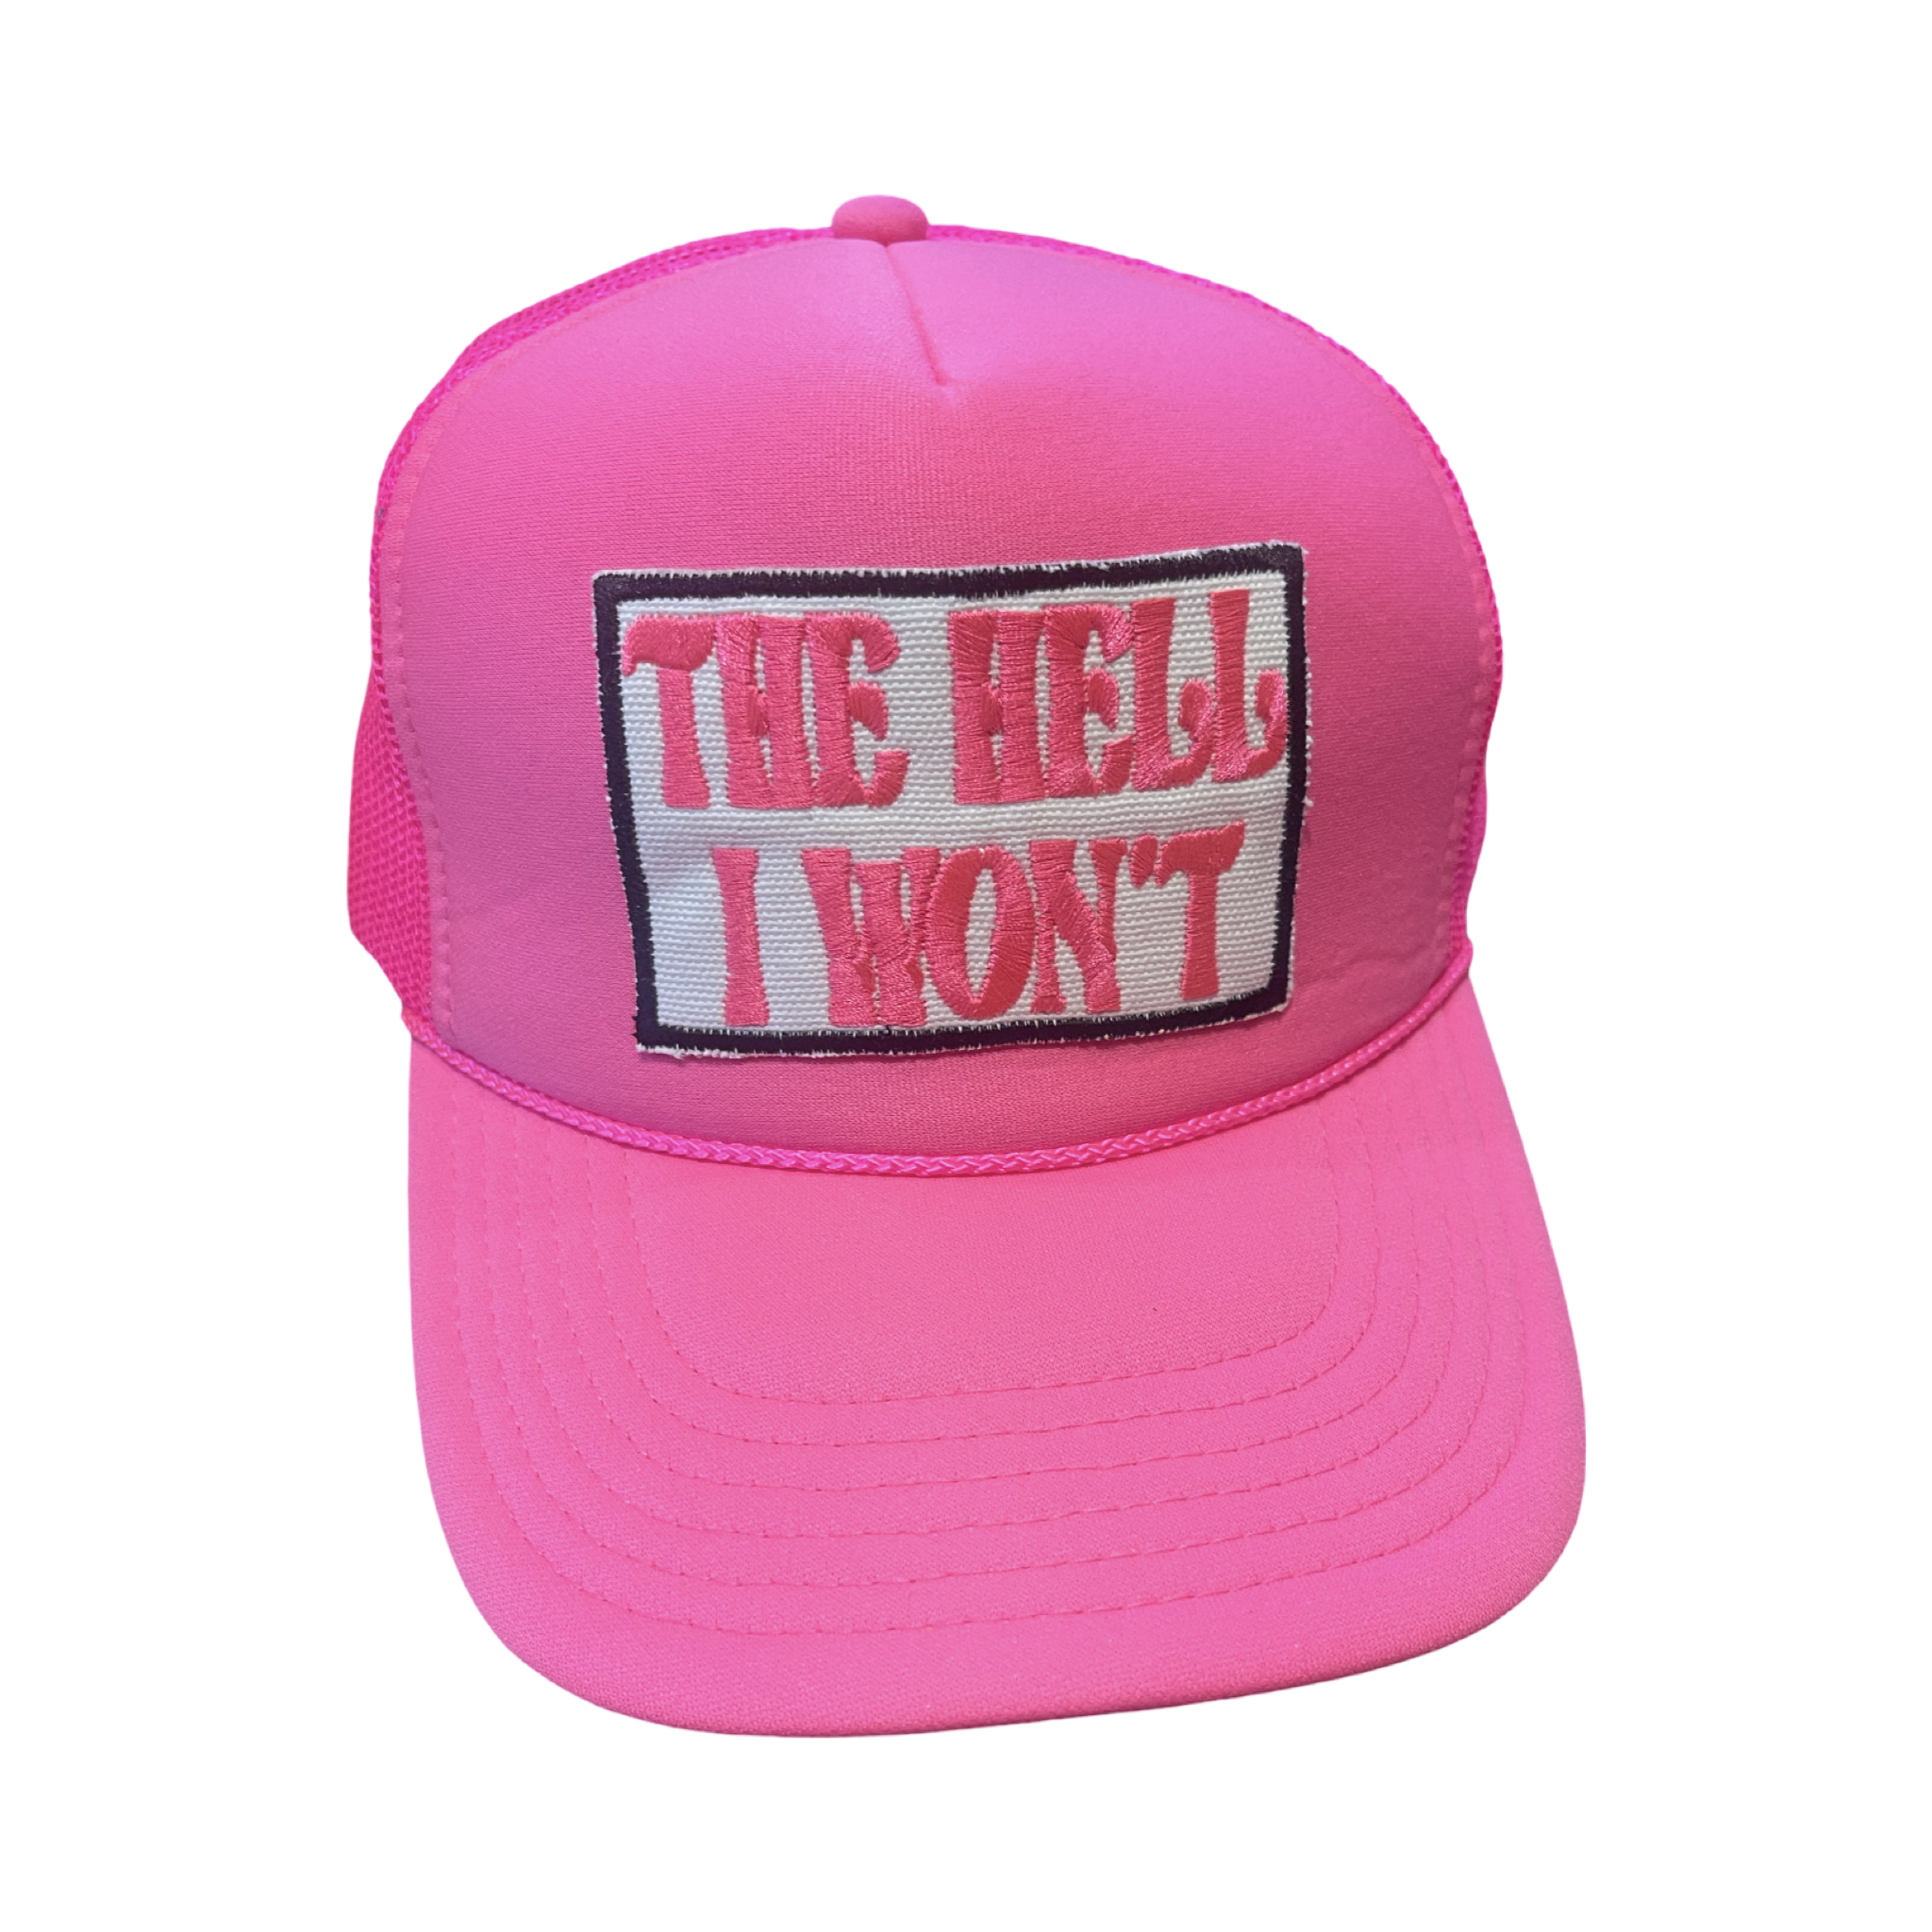 Trucker Hat Foam "The Hell I Won't"